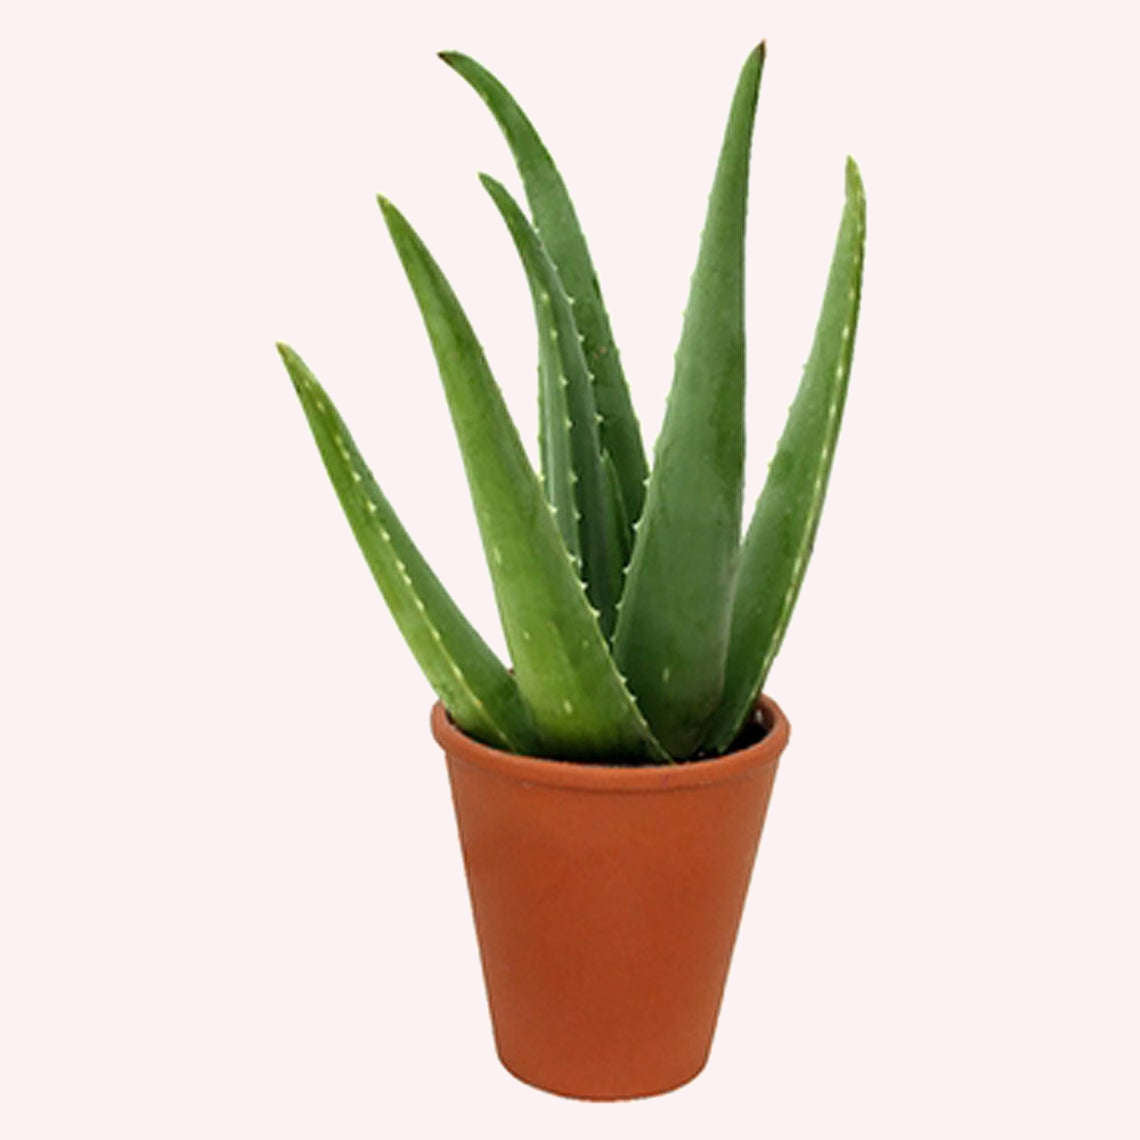 Aloe Vera plant in a 6" pot.